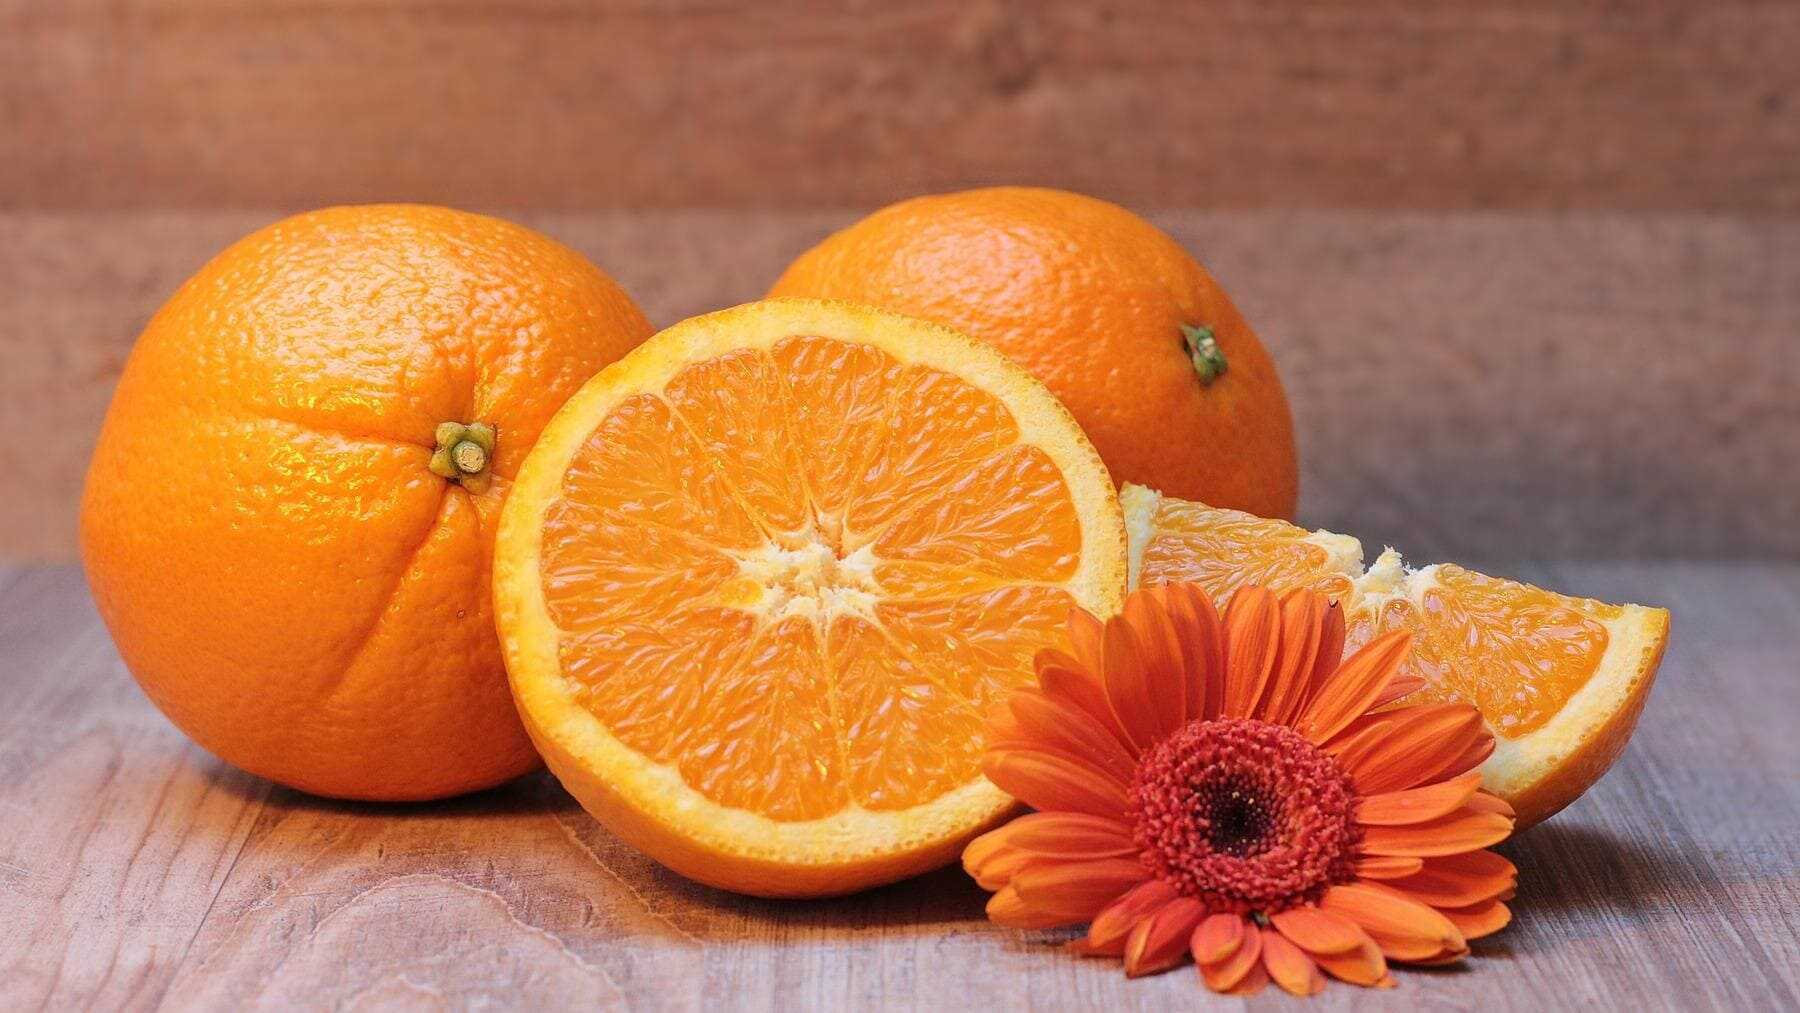 La naranja o el zumo, ¿qué es mejor?